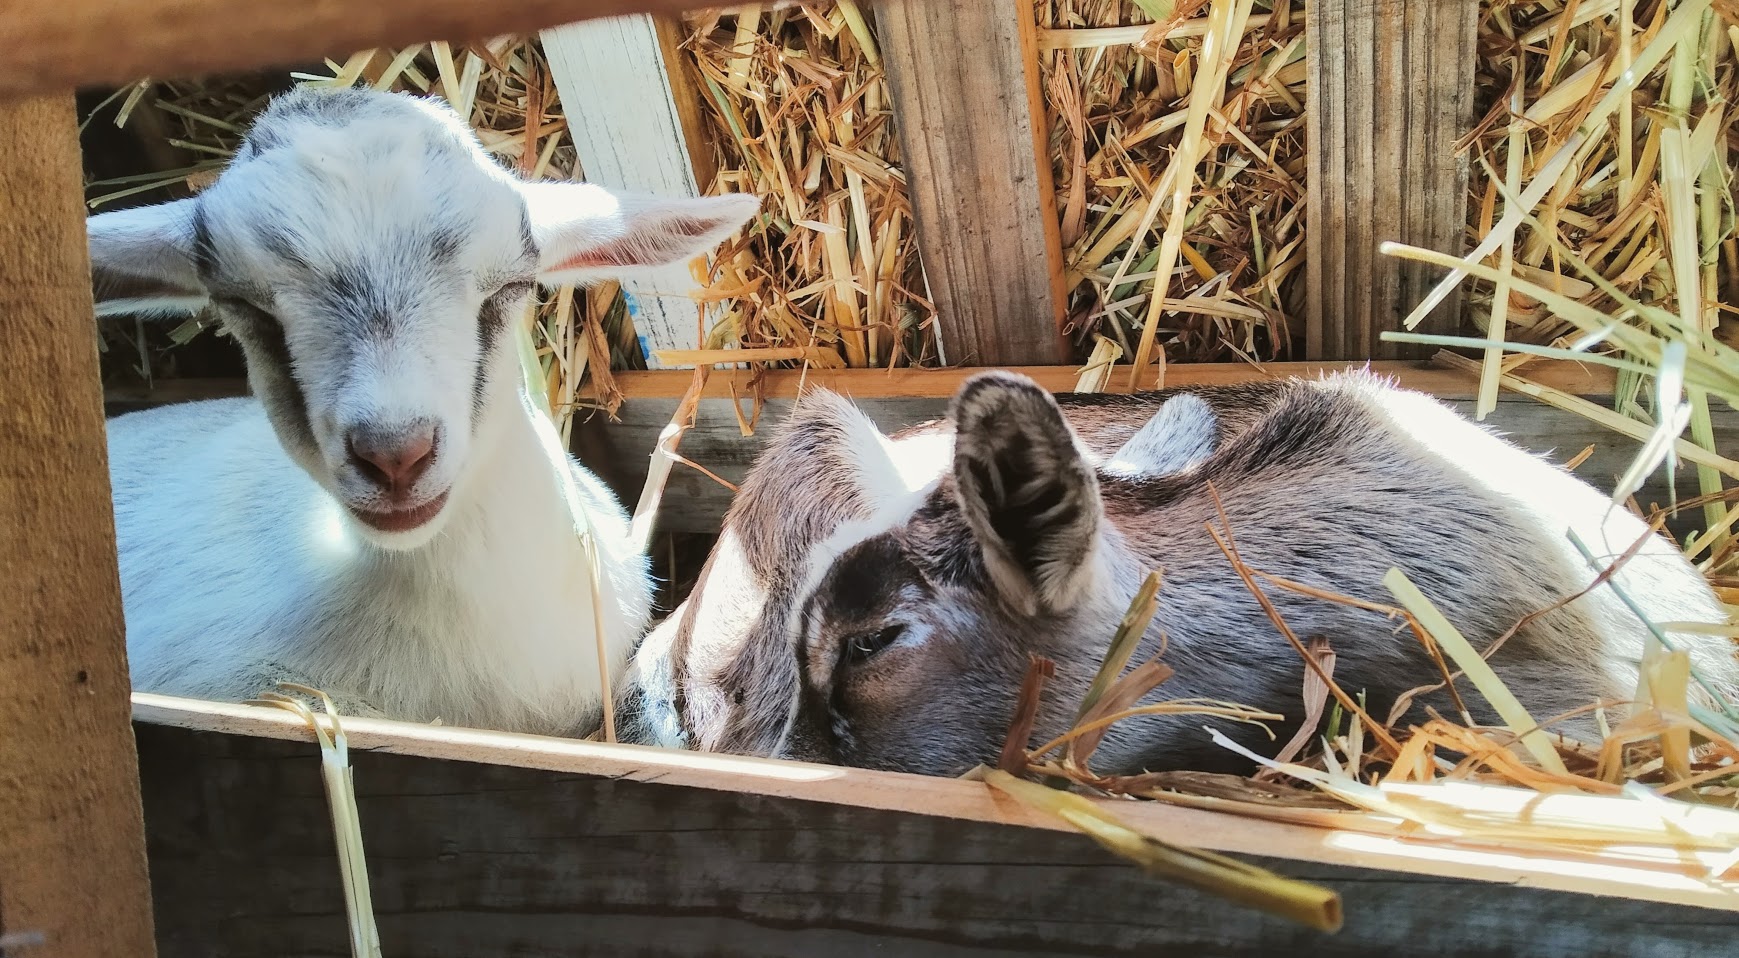 Two Nigerian Dwarf Goat kids